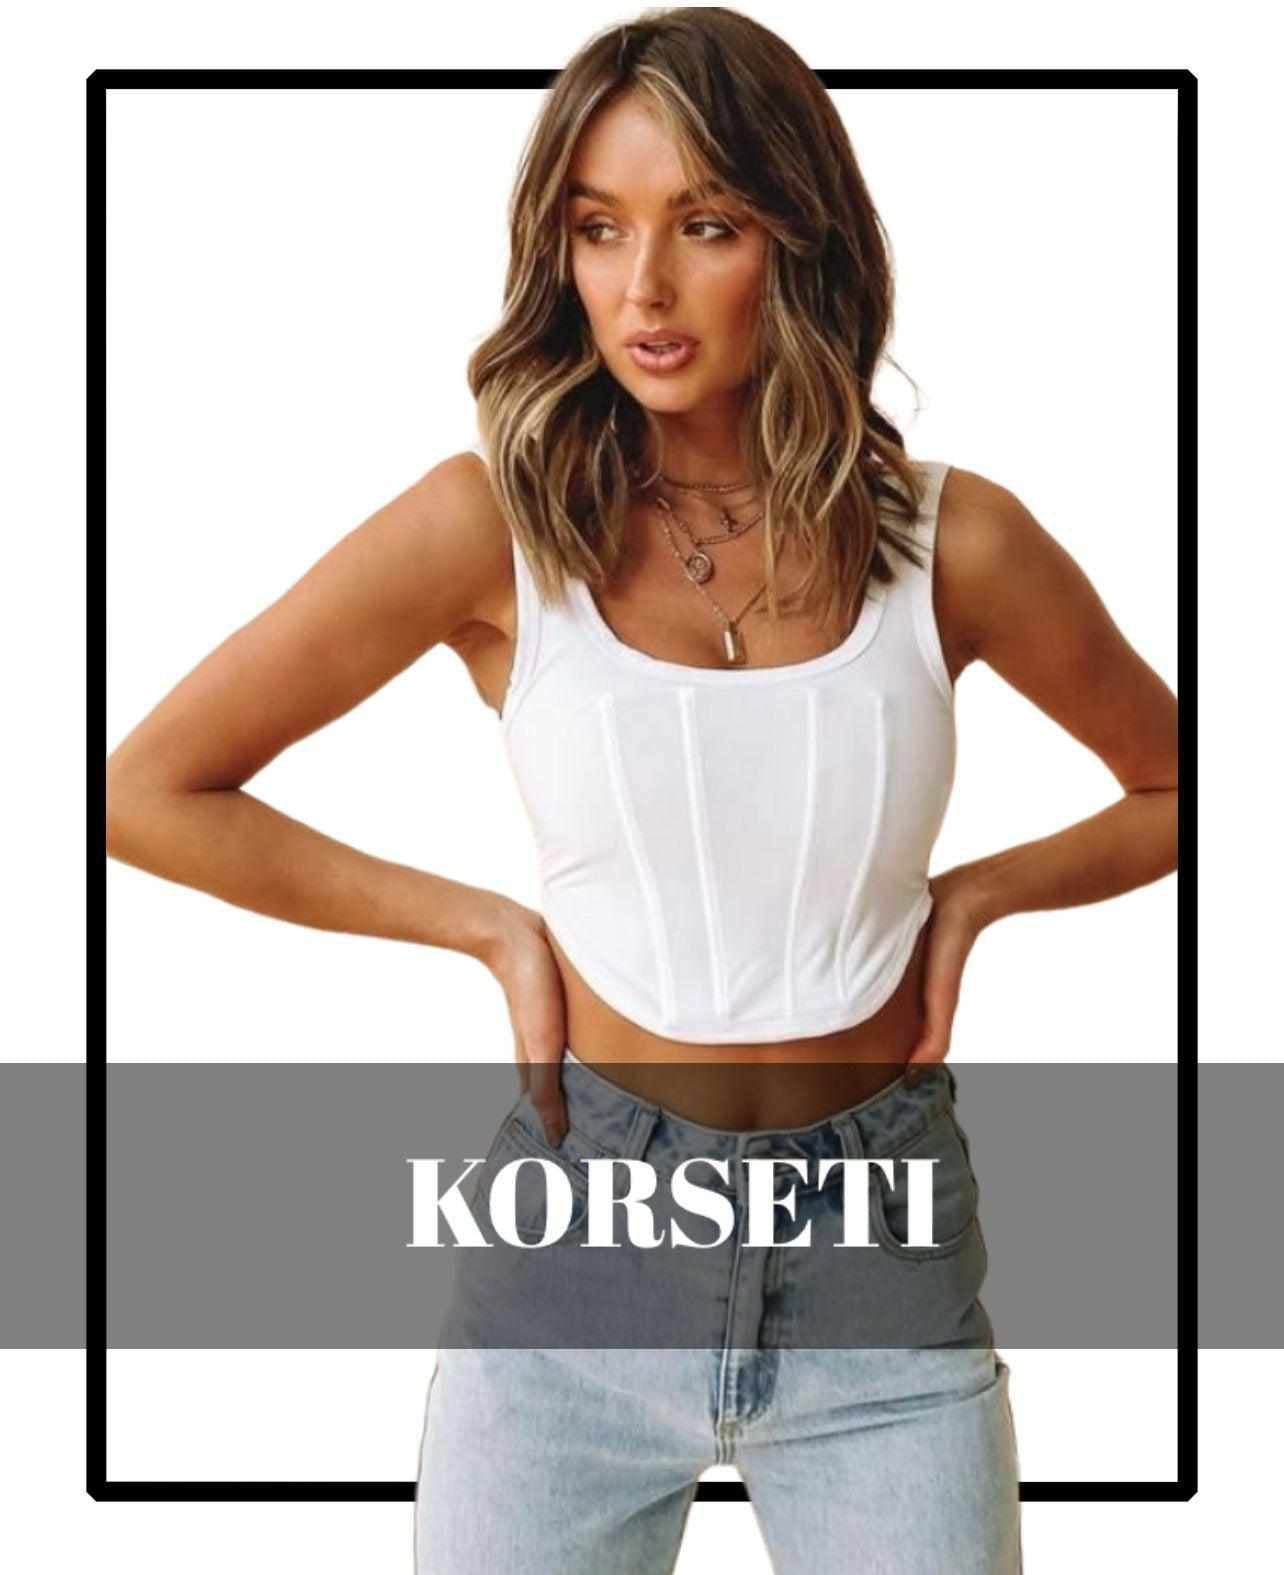 Kolekcija Korseti - Contessa Moda Fashion Store